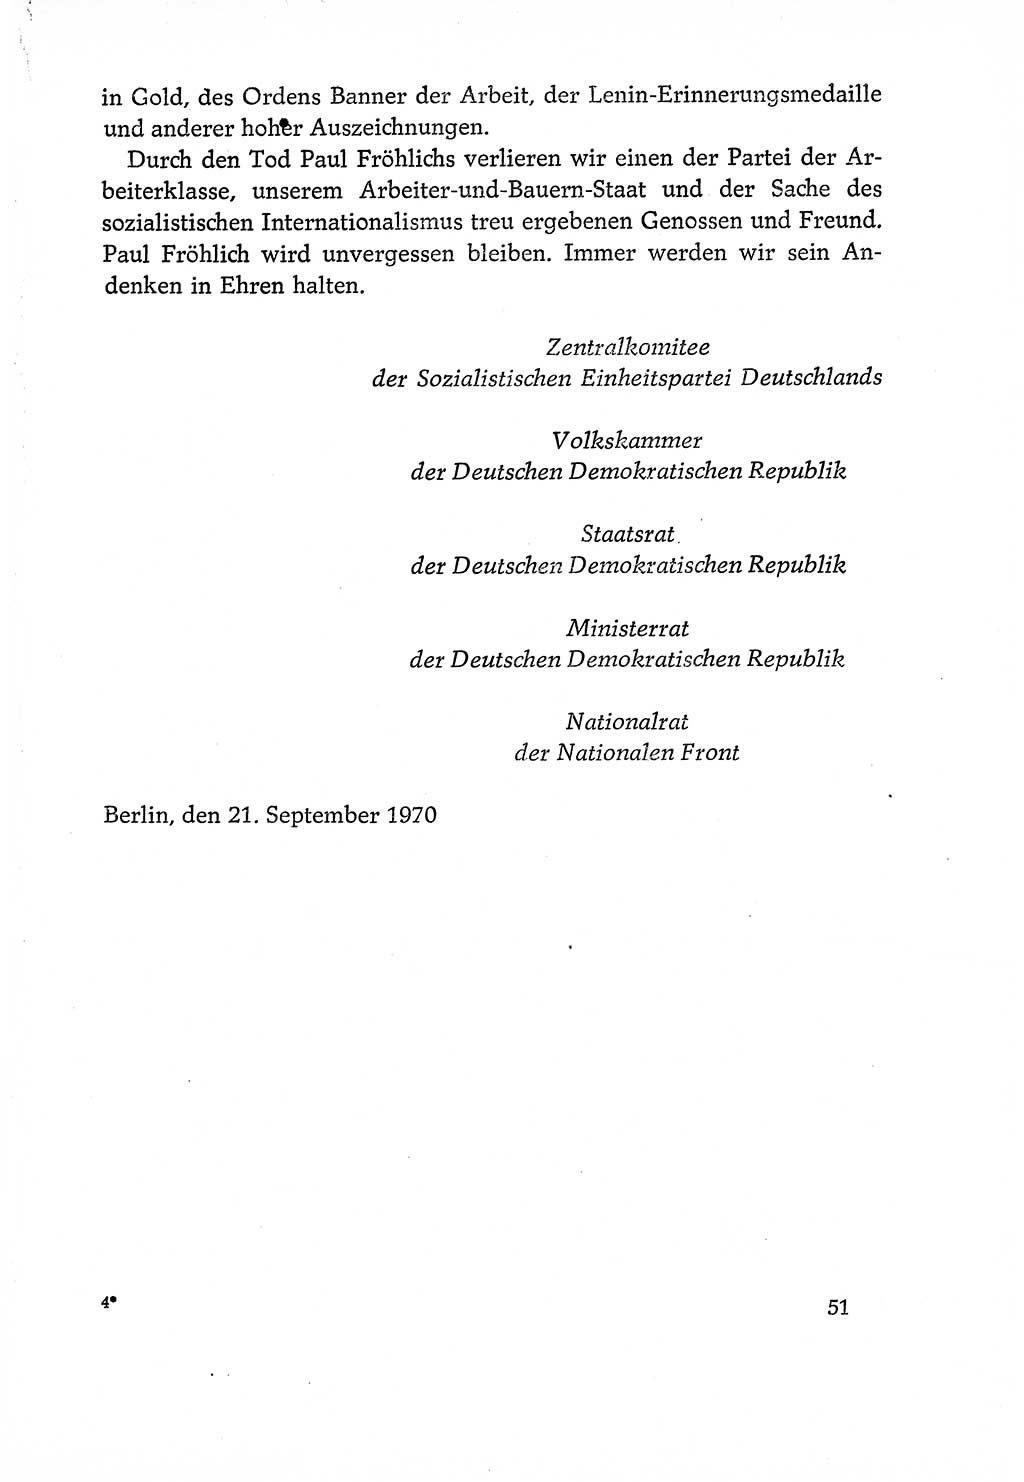 Dokumente der Sozialistischen Einheitspartei Deutschlands (SED) [Deutsche Demokratische Republik (DDR)] 1970-1971, Seite 51 (Dok. SED DDR 1970-1971, S. 51)